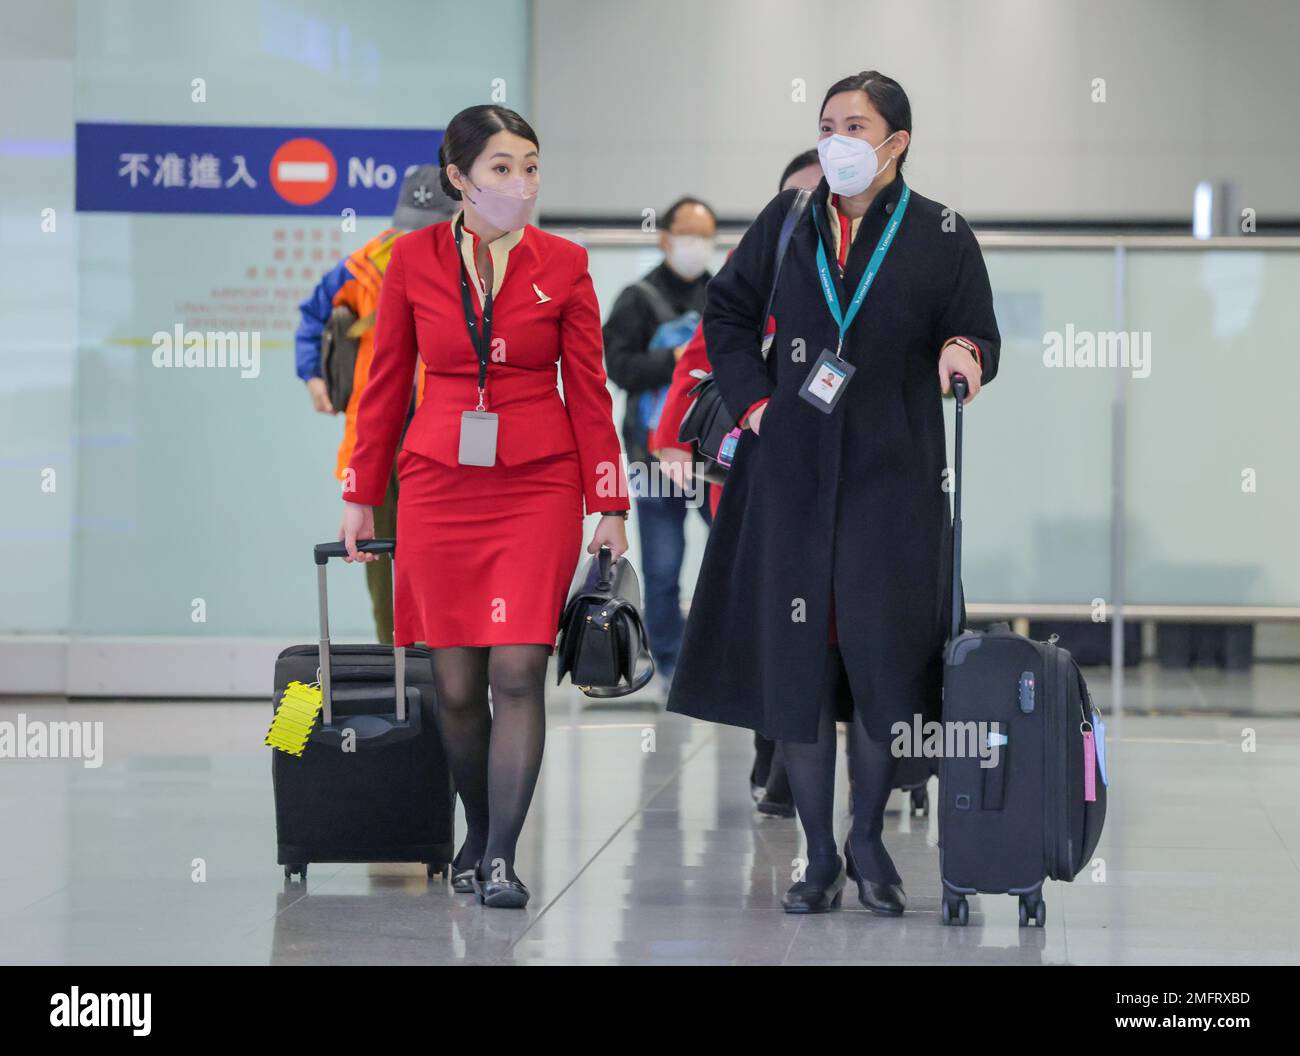 Il personale della Cathay Pacific Airways (CX) lavora nella sala partenze  dell'aeroporto internazionale di Hong Kong, Chek Lap Kok. L'equipaggio di  cabina di Hong KongHH Cathay Pacific inizierà la campagna "Work-to-rule" da